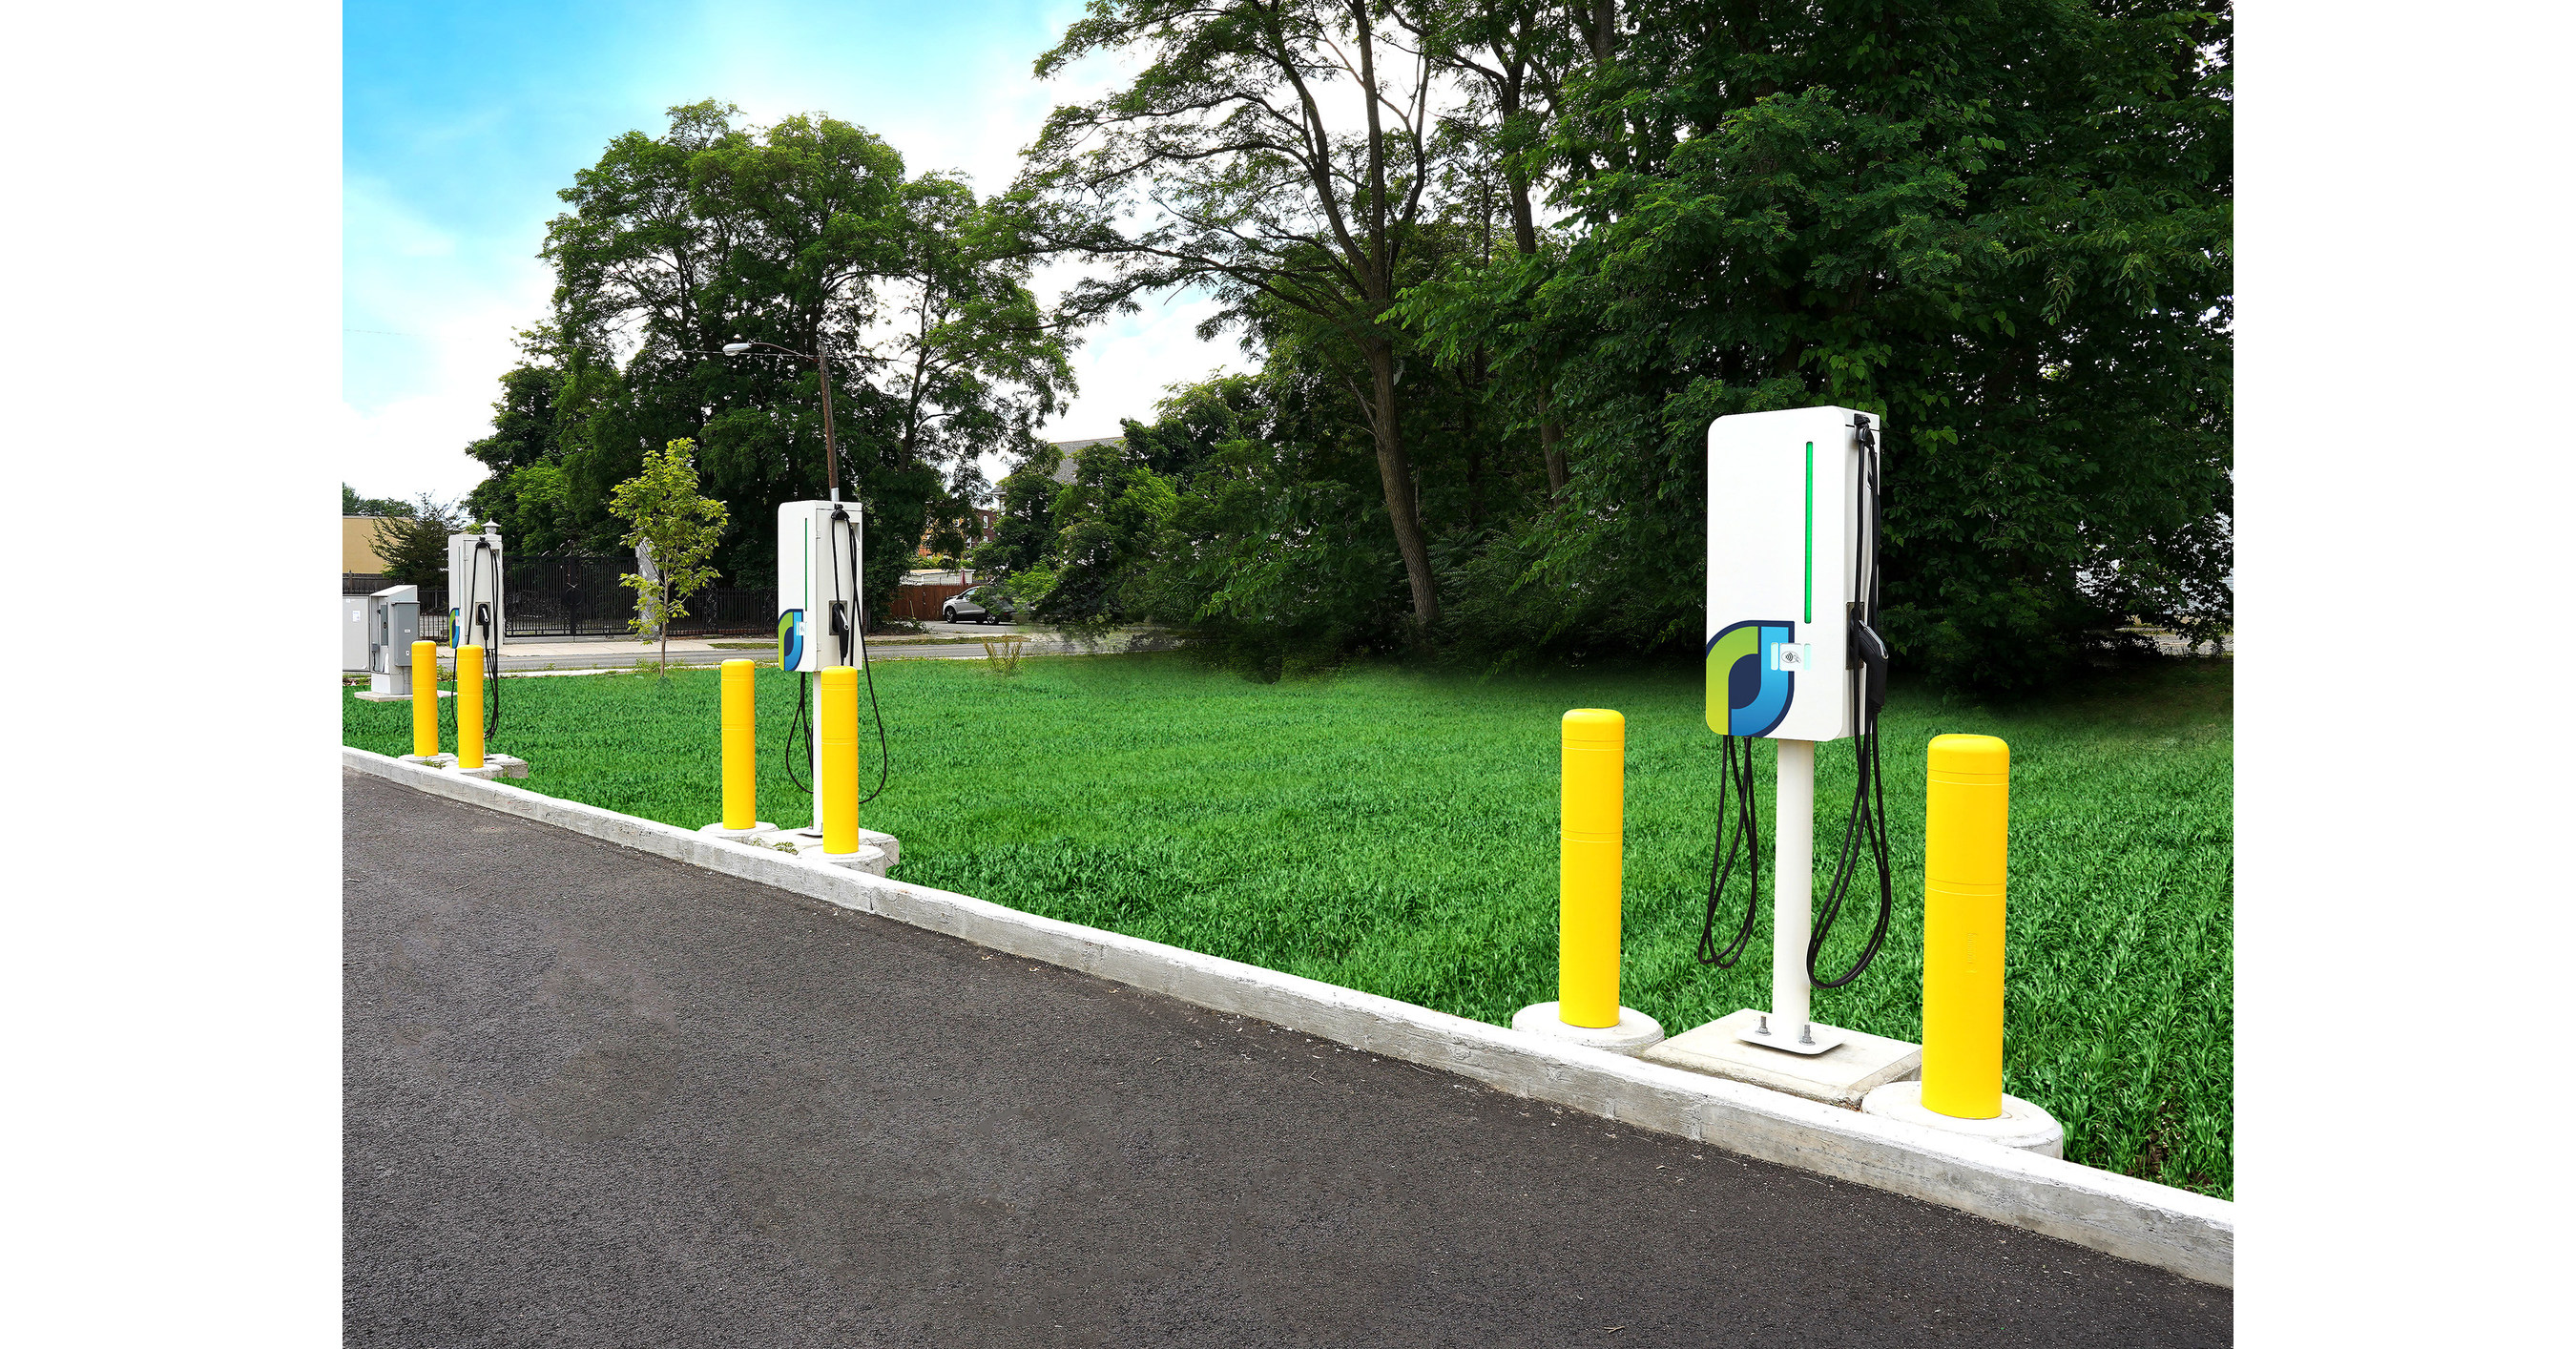 JuiceBar and UFODRIVE Deliver an Innovative EV Charging Platform for EV